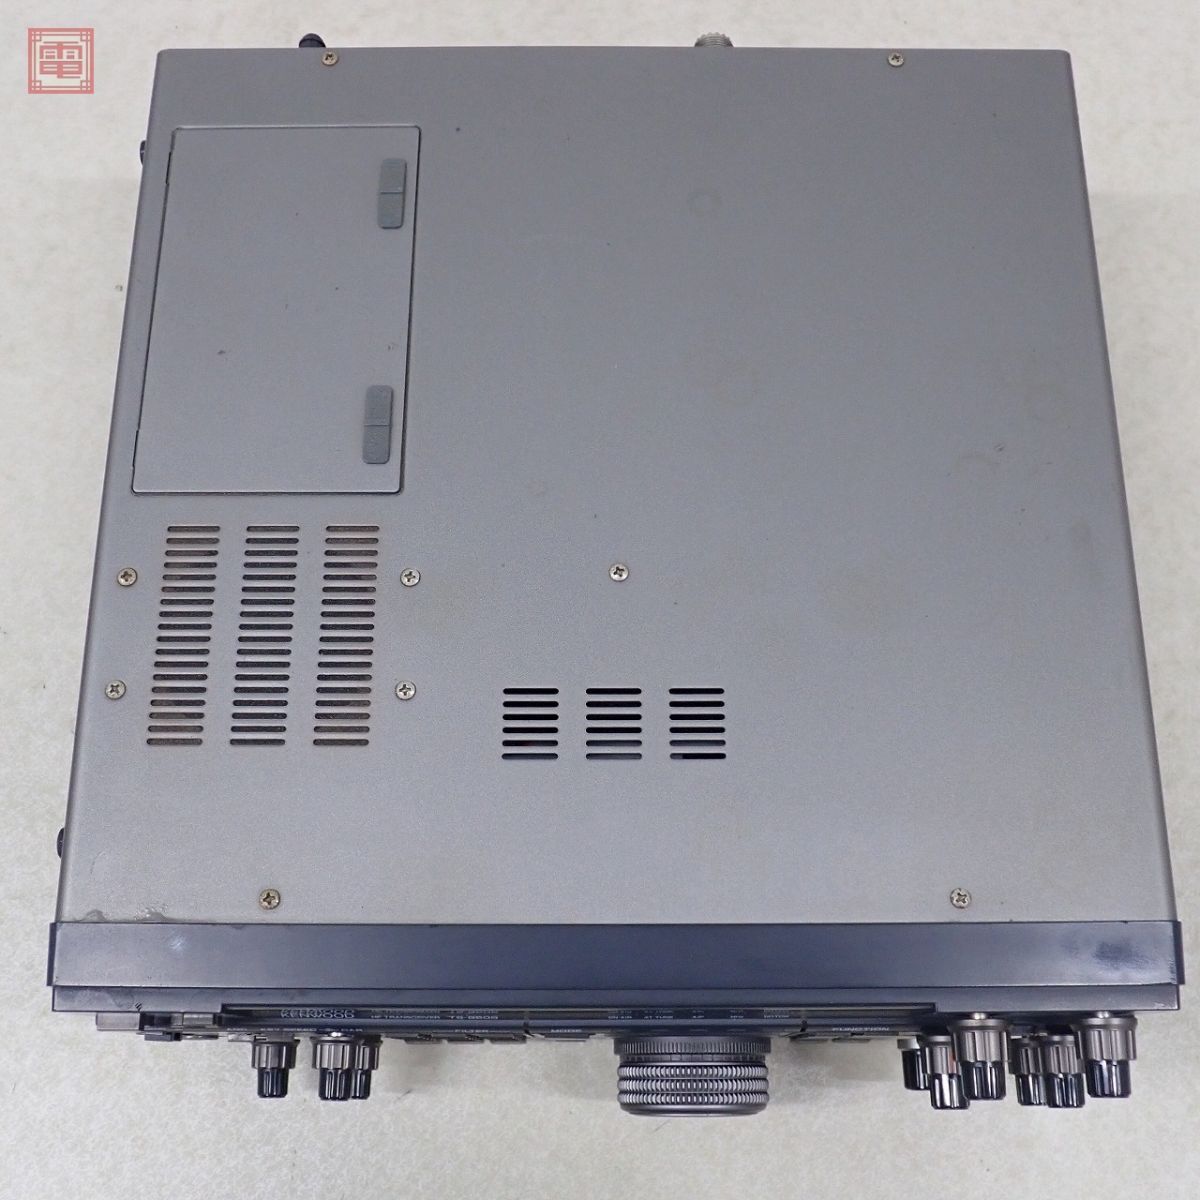 1 иен ~ Kenwood TS-850S HF obi 100W AT встроенный * опция фильтр комплект включено settled KENWOOD текущее состояние товар [20